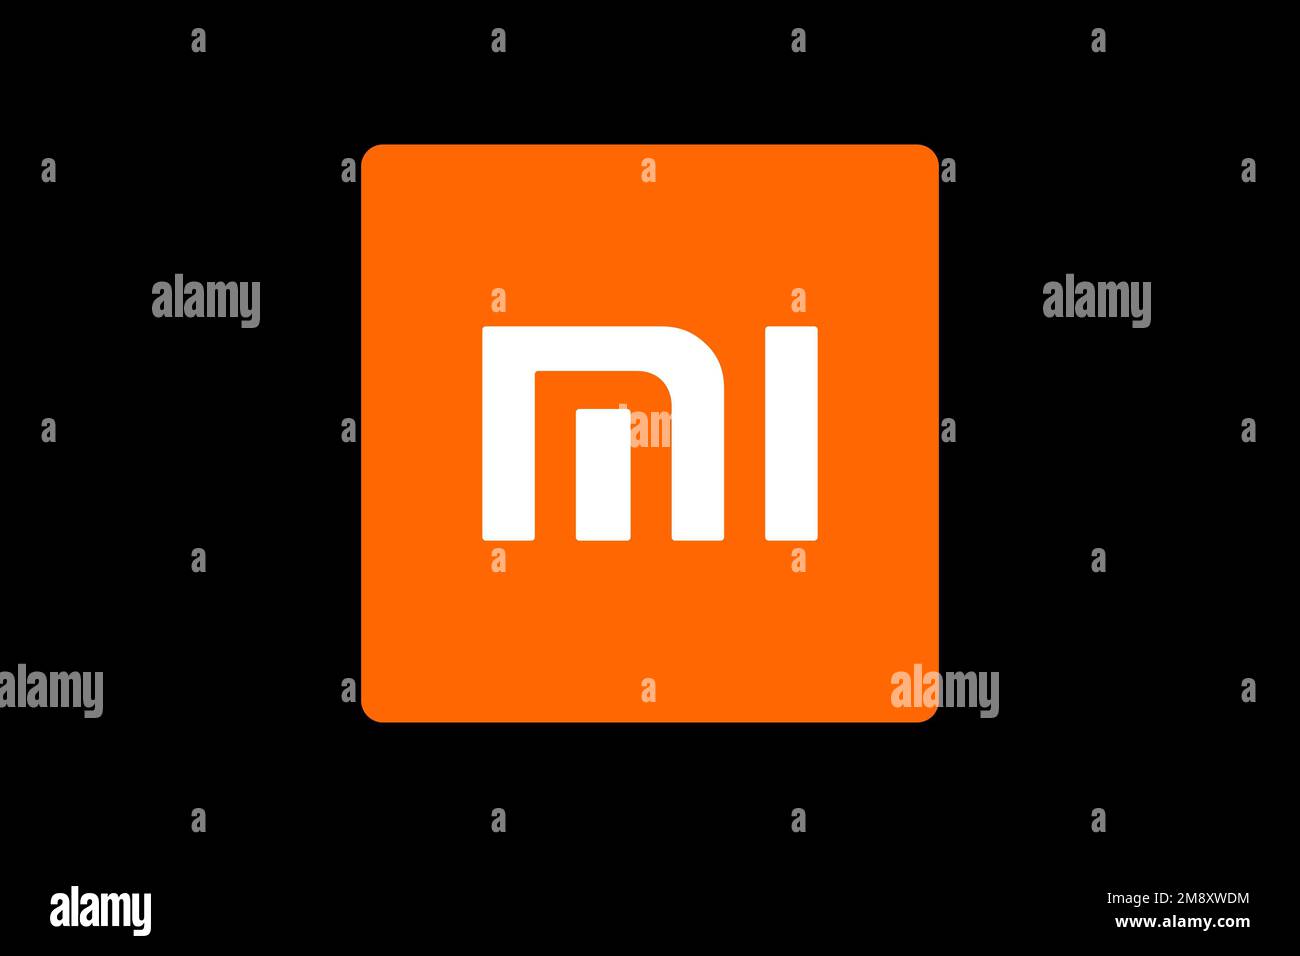 Xiaomi Mi Note 2, stock photo, black background: Xiaomi Mi Note 2 mang đến một trải nghiệm đỉnh cao về công nghệ và thiết kế. Hình ảnh chụp lại chiếc điện thoại trên nền đen sẽ khiến những chi tiết sang trọng và cá tính của sản phẩm trở nên nổi bật hơn. Hãy xem ngay hình ảnh liên quan để thấy được sự khác biệt của Mi Note 2!